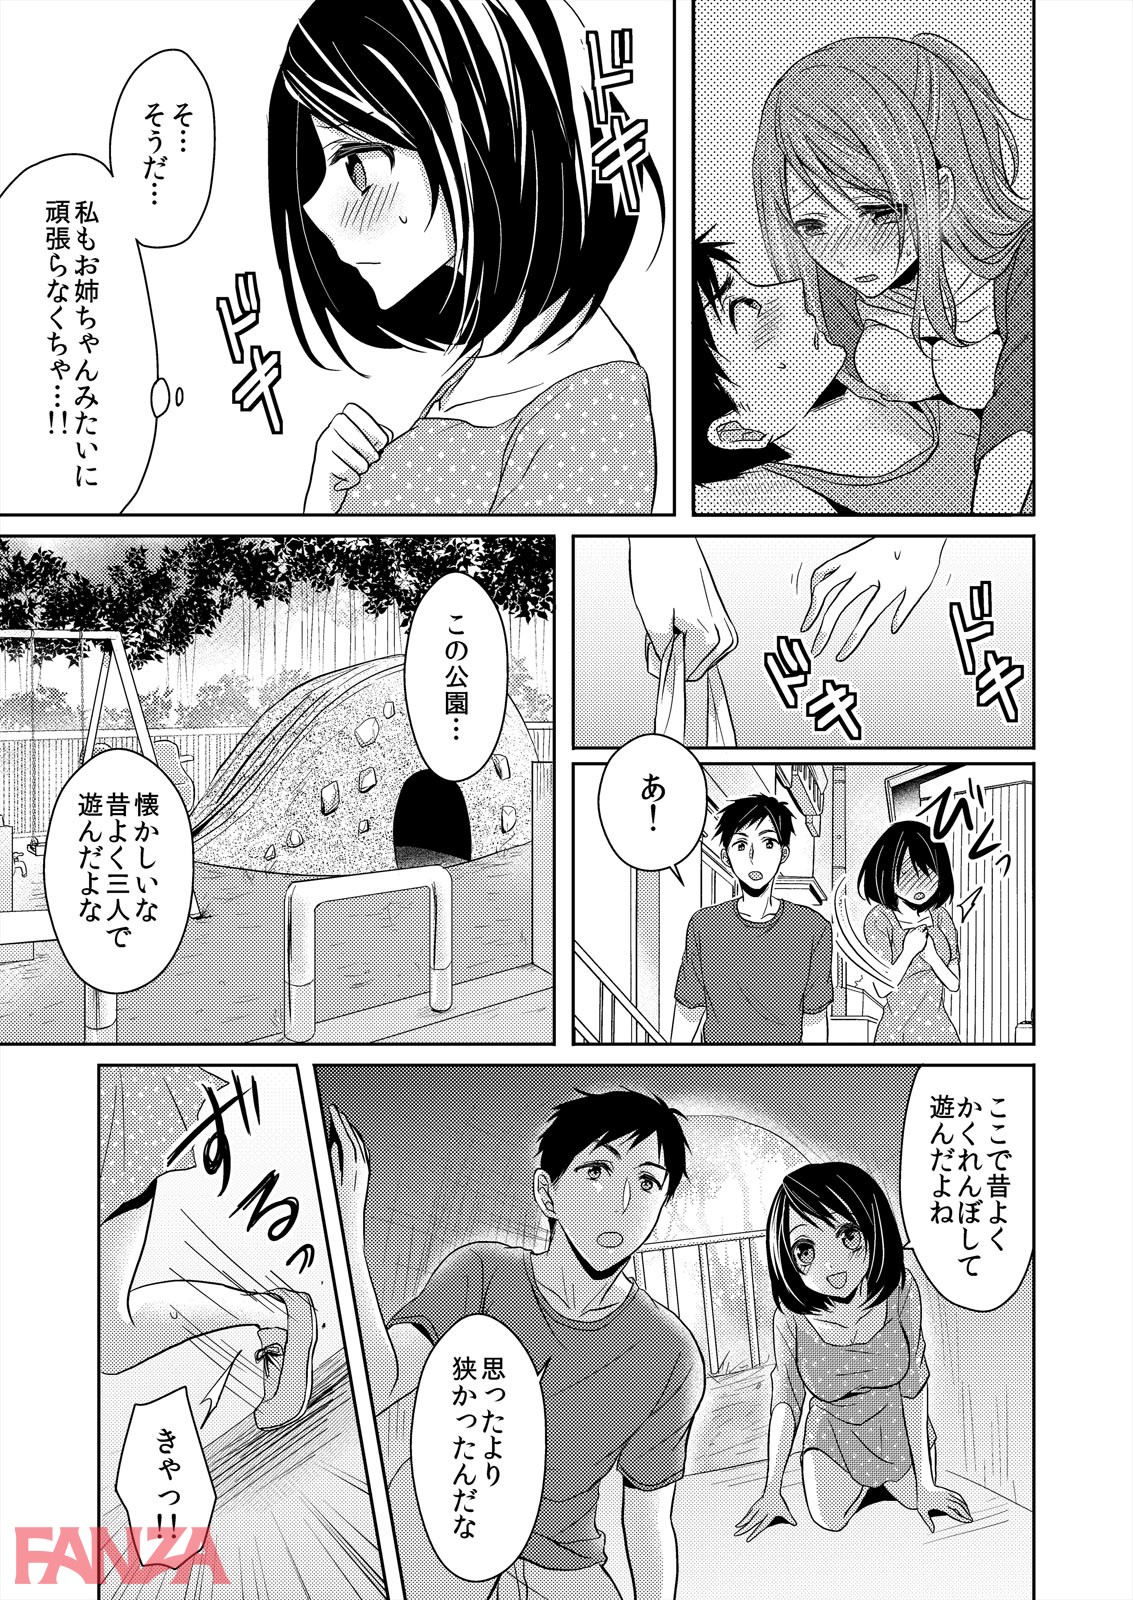 【エロ漫画】ふたご姉妹と密着3P生活、はじめました。【完全版】 - ページ020